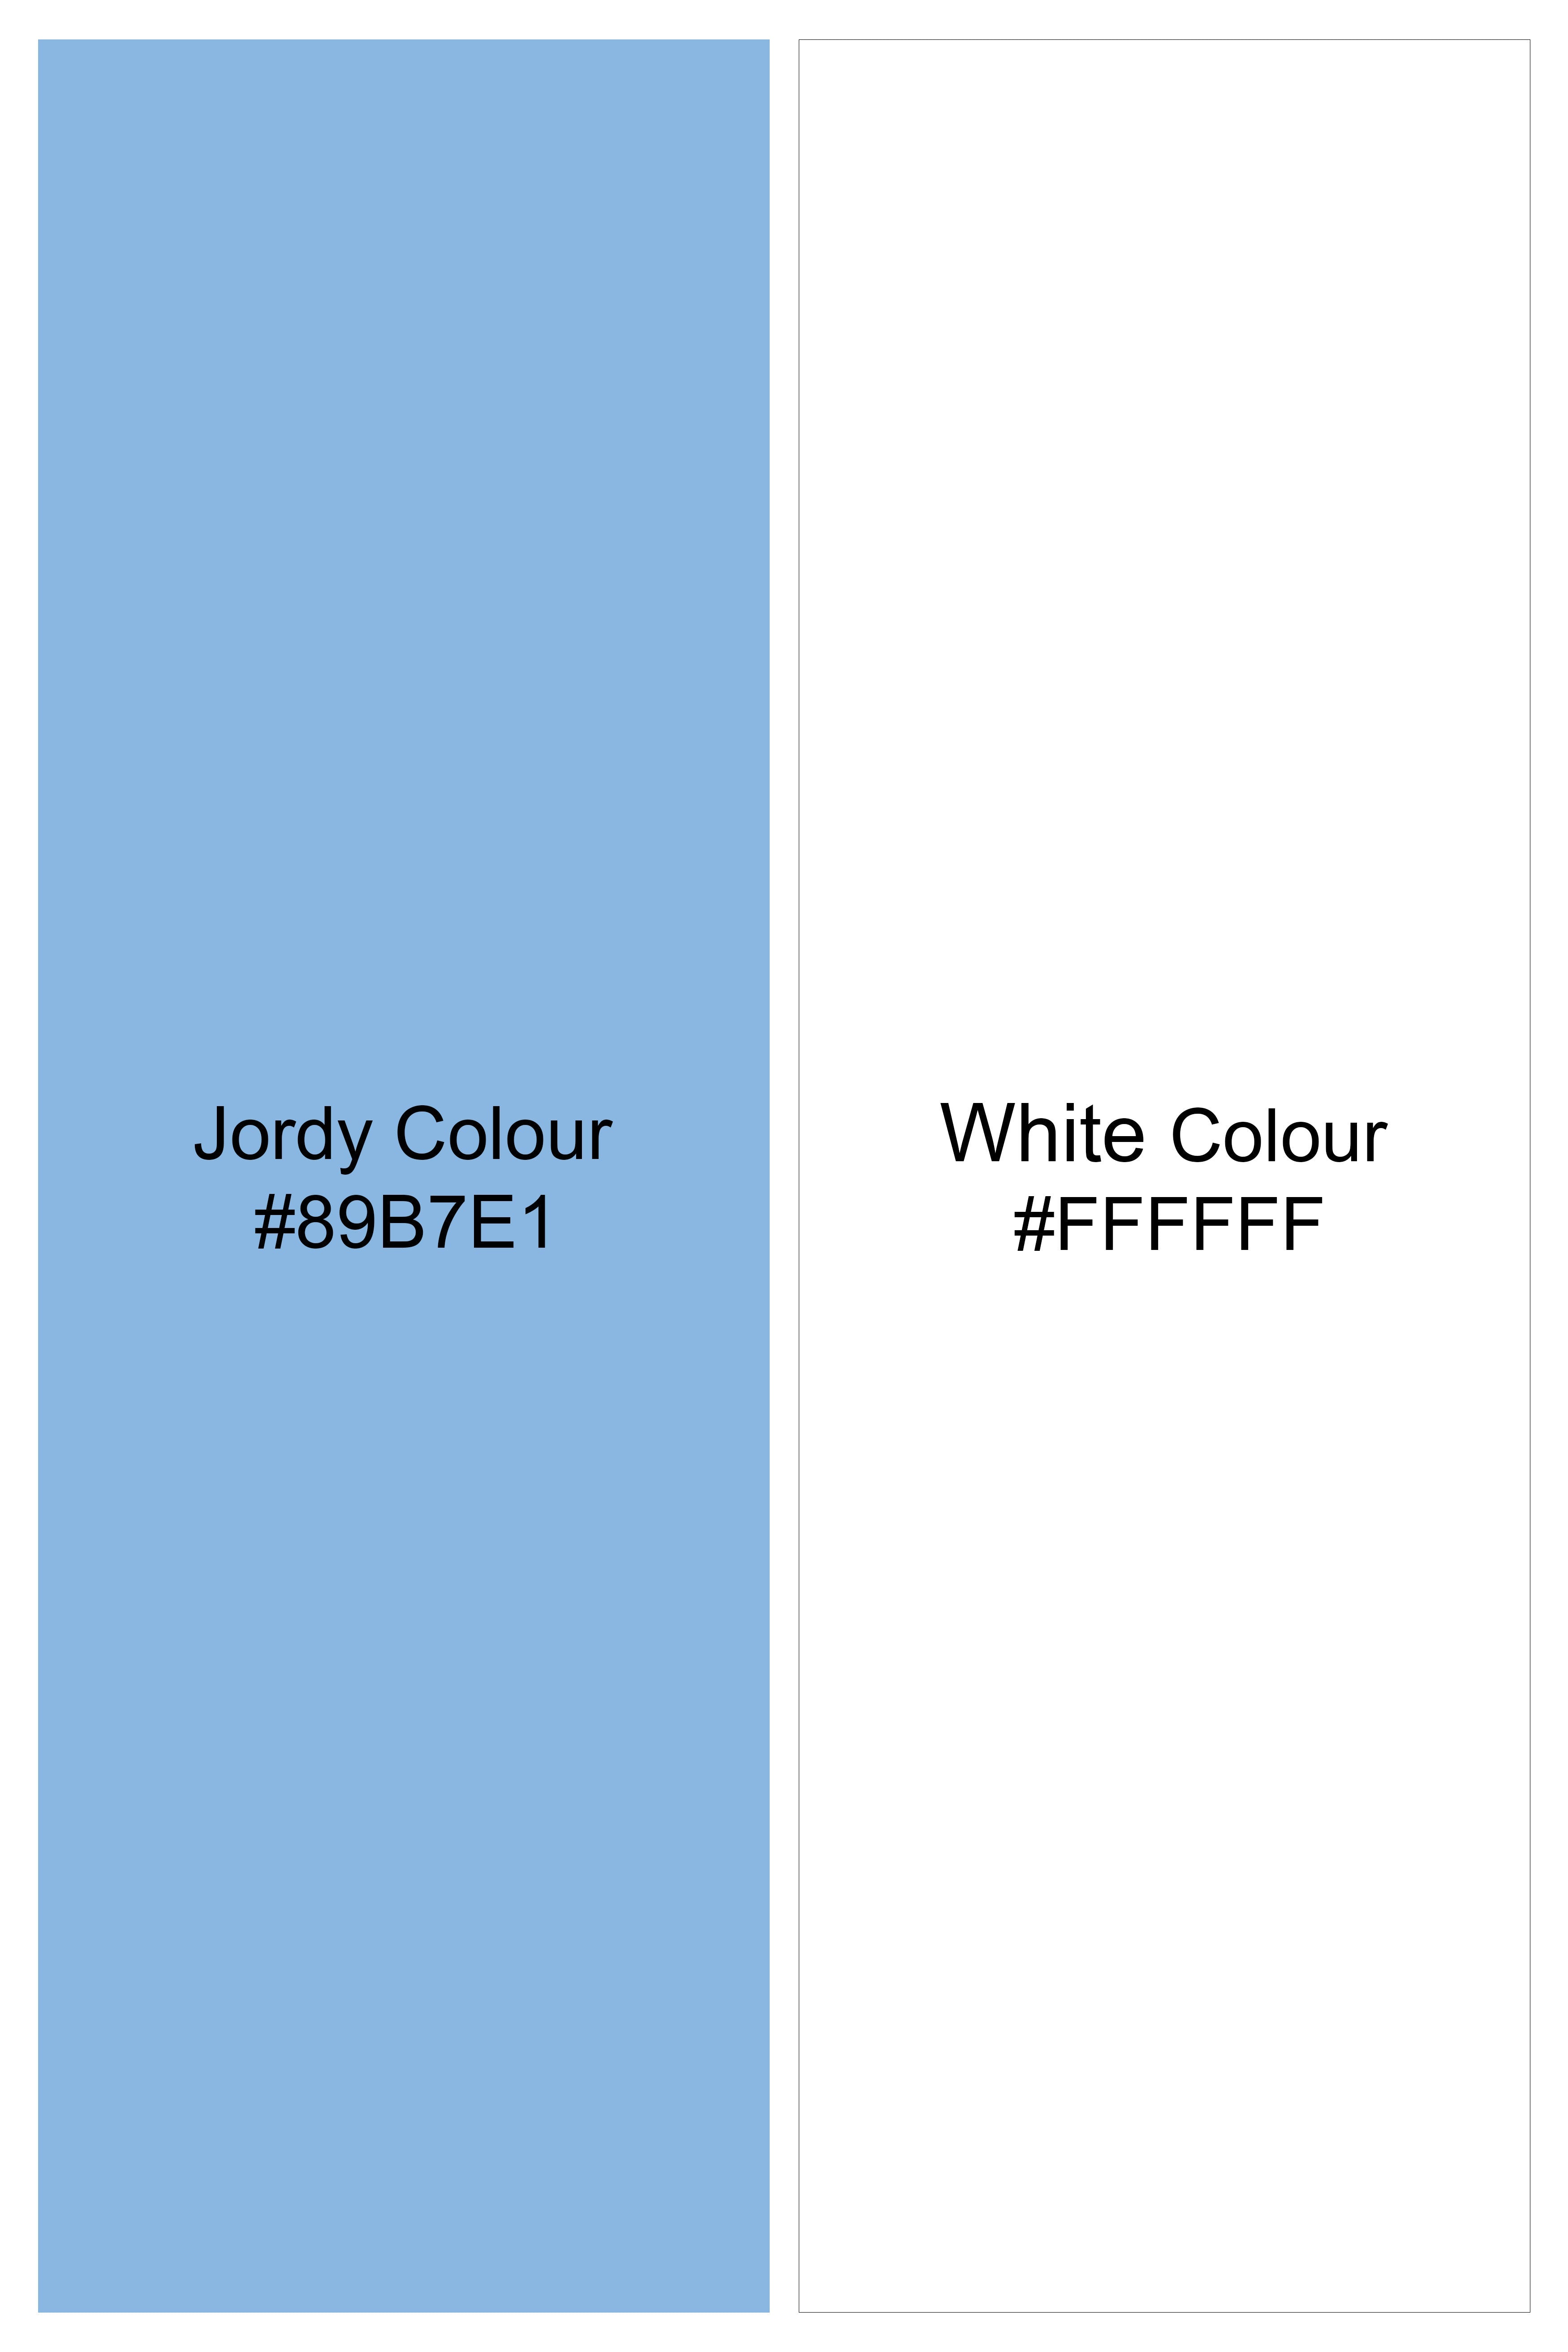 Jordy Blue Pin Striped Wool Rich Bandhgala Designer Blazer BL2867-D345-36, BL2867-D345-38, BL2867-D345-40, BL2867-D345-42, BL2867-D345-44, BL2867-D345-46, BL2867-D345-48, BL2867-D345-50, BL2867-D345-67, BL2867-D345-54, BL2867-D345-56, BL2867-D345-58, BL2867-D345-60